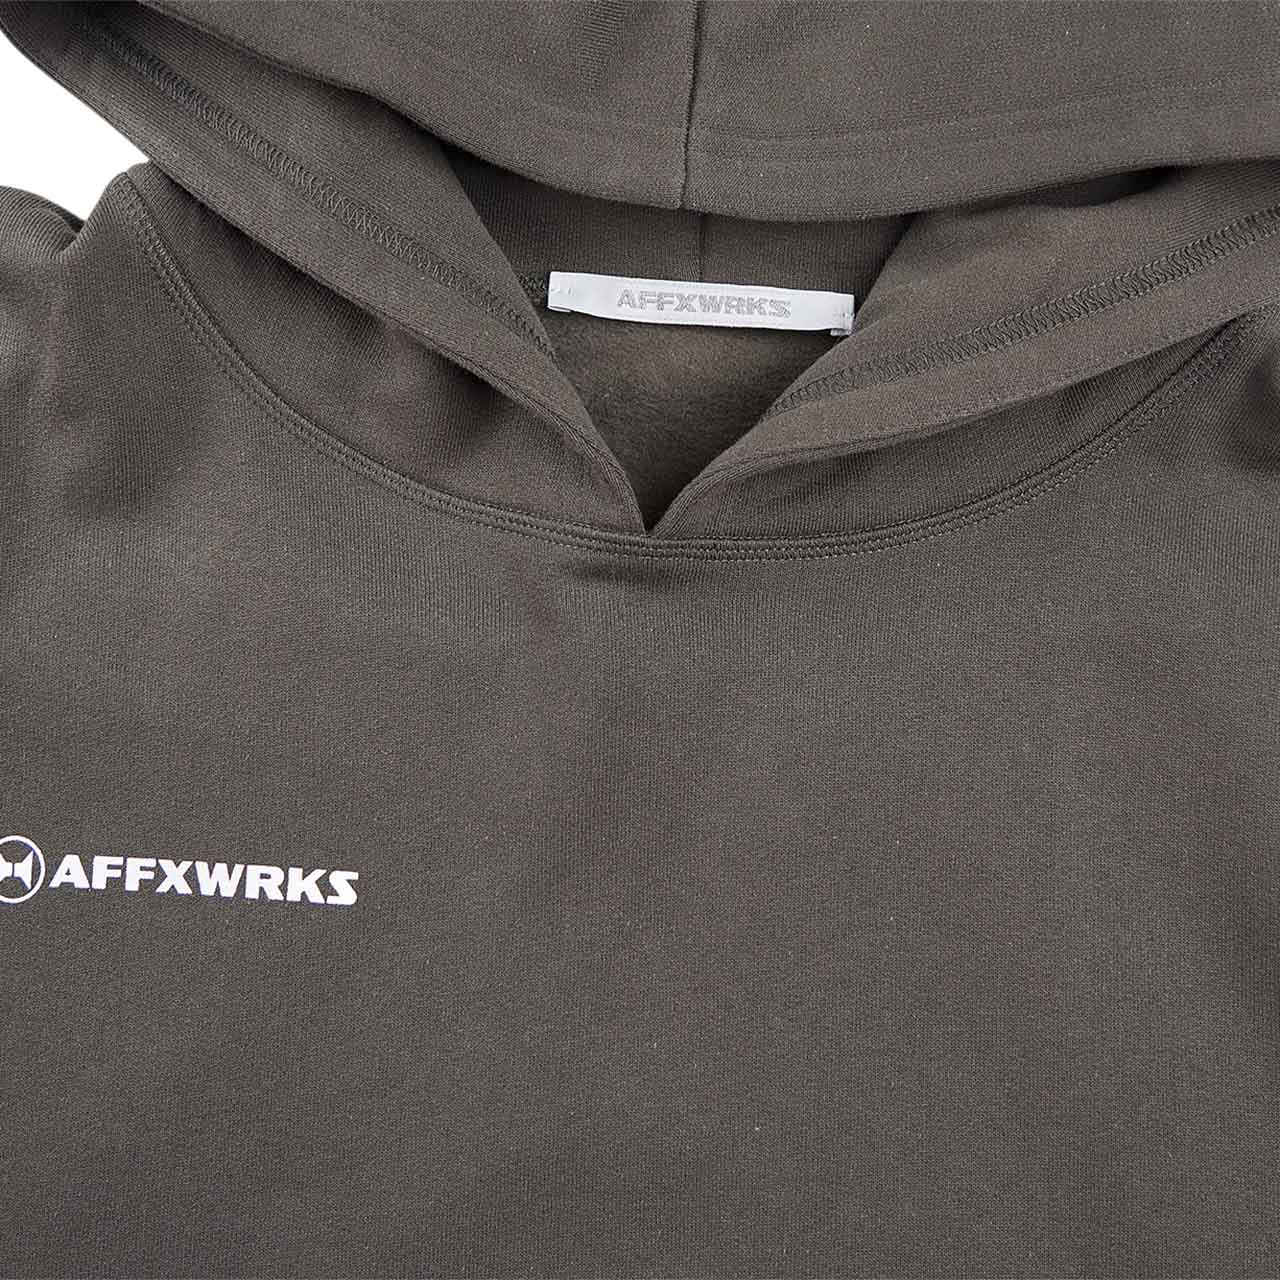 affxwrks hoodie (verwaschenes schwarz)